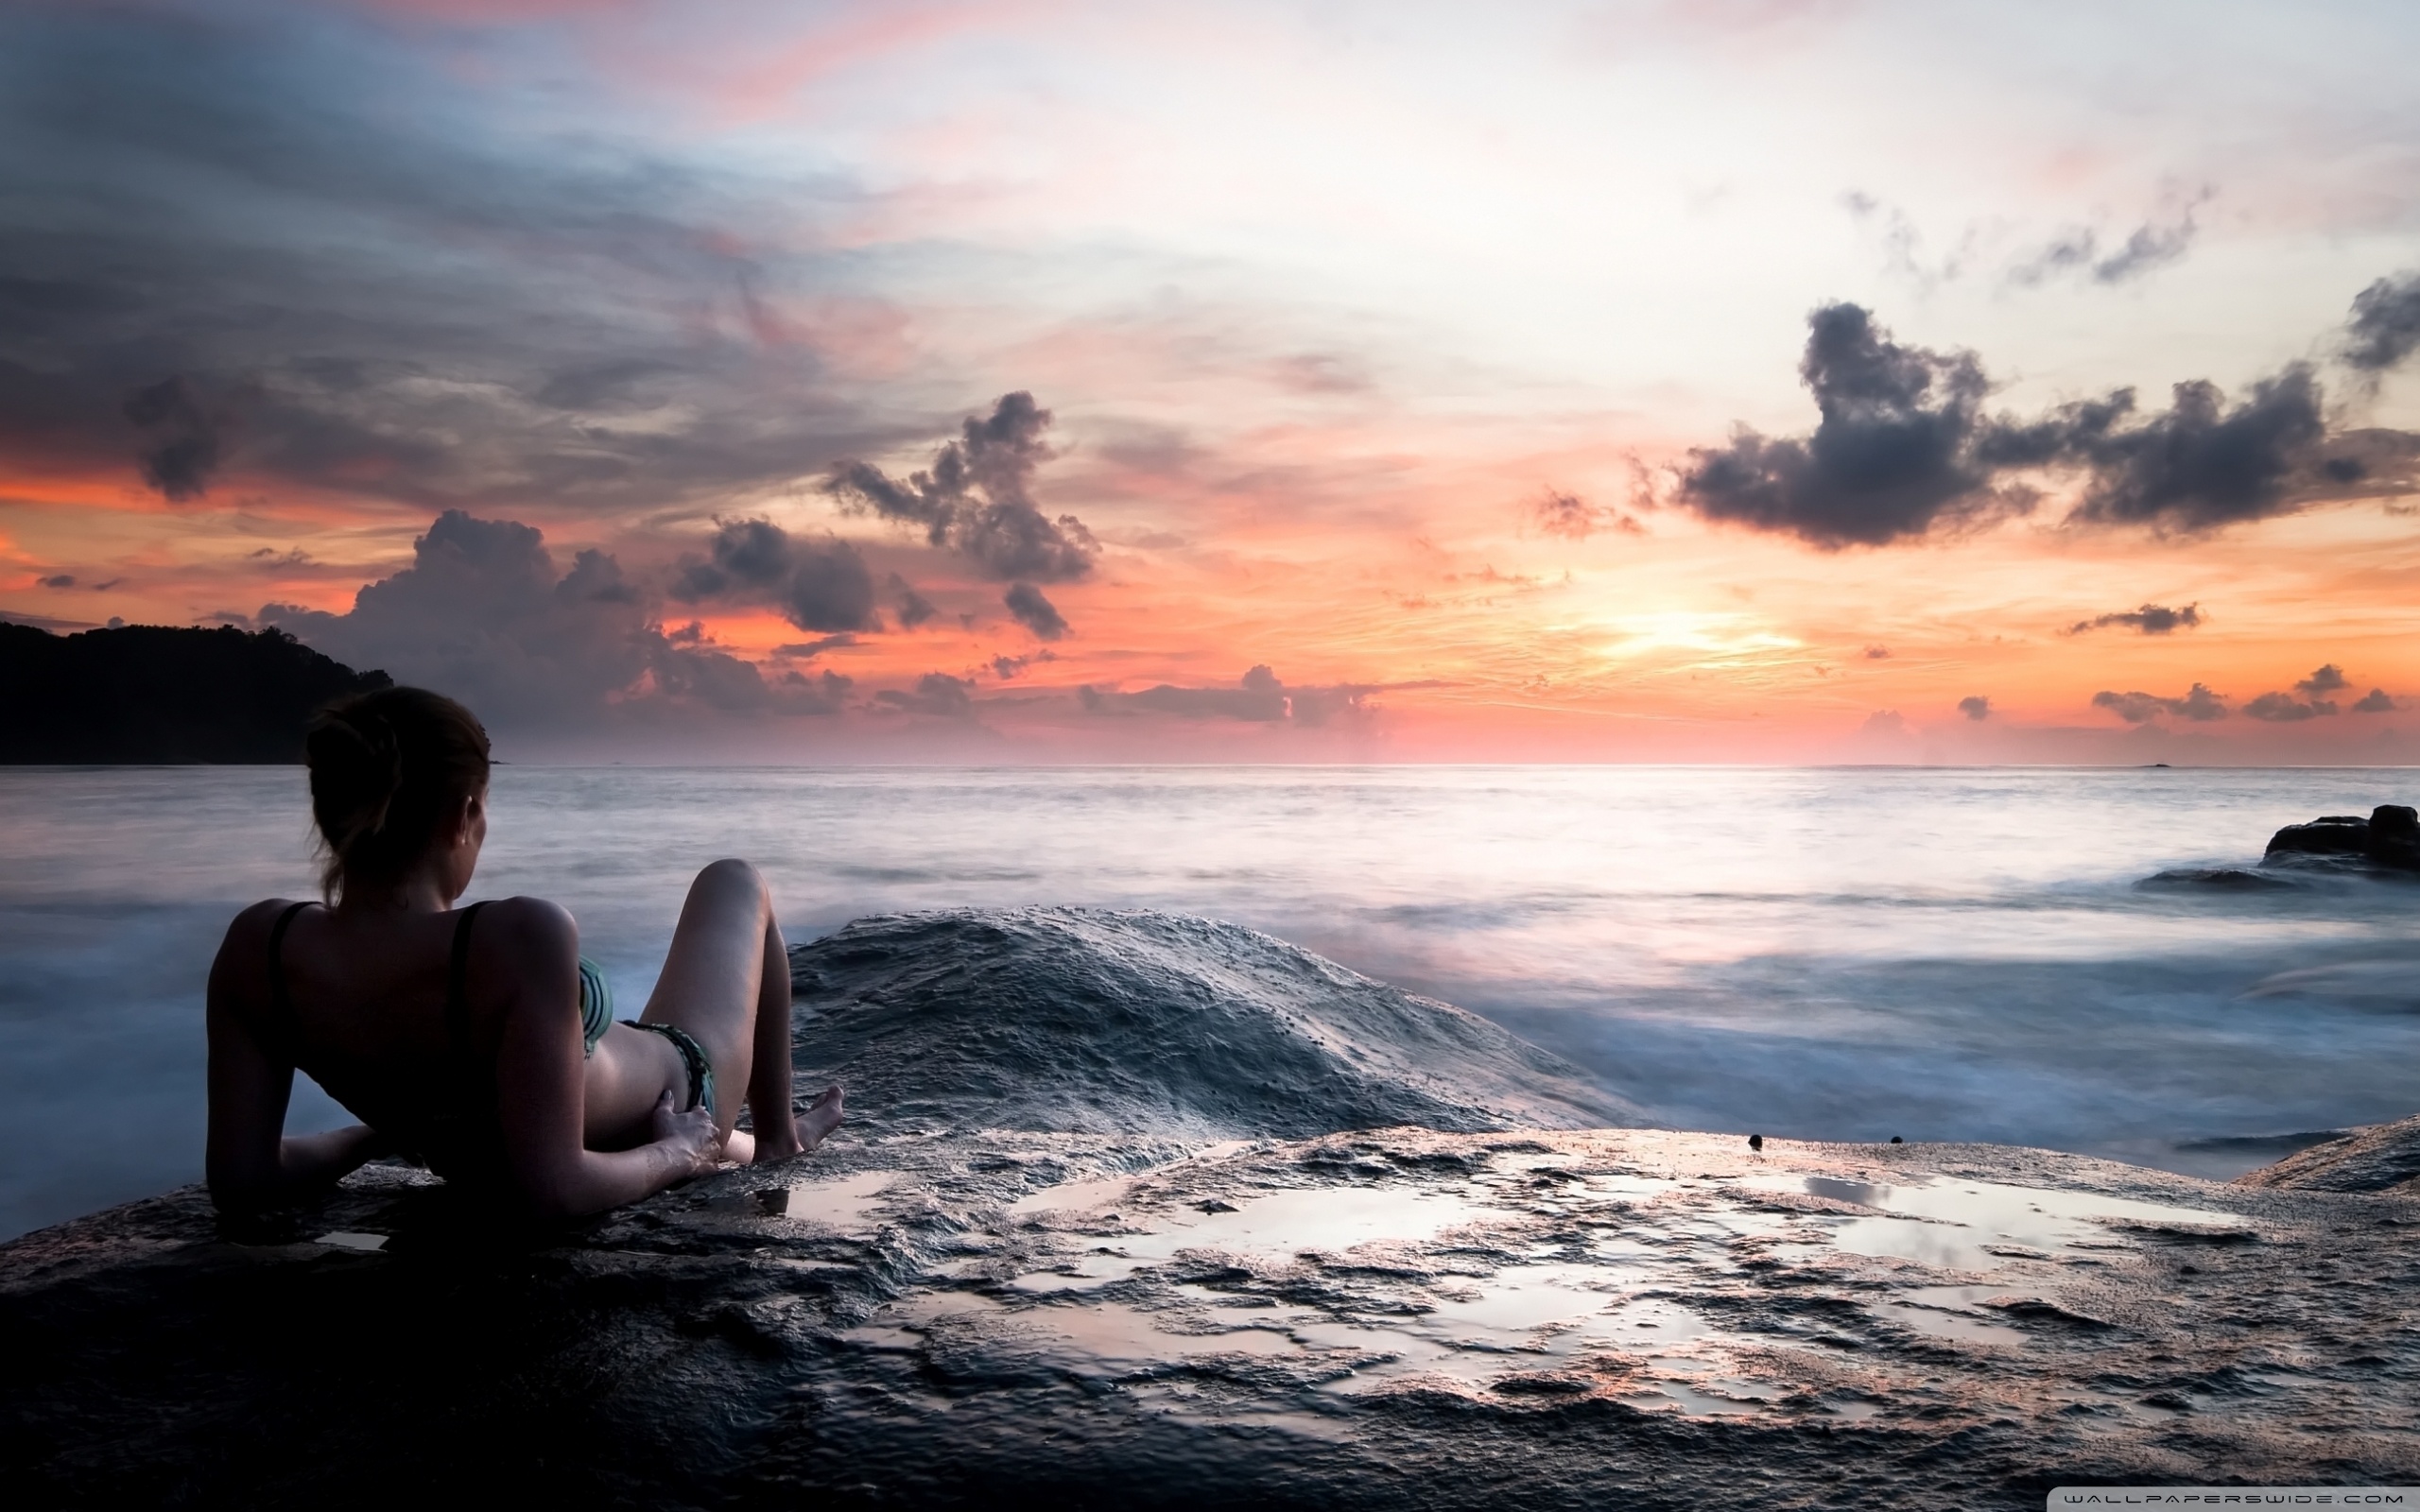 На фото красивая голая девчонка скучает у побережья